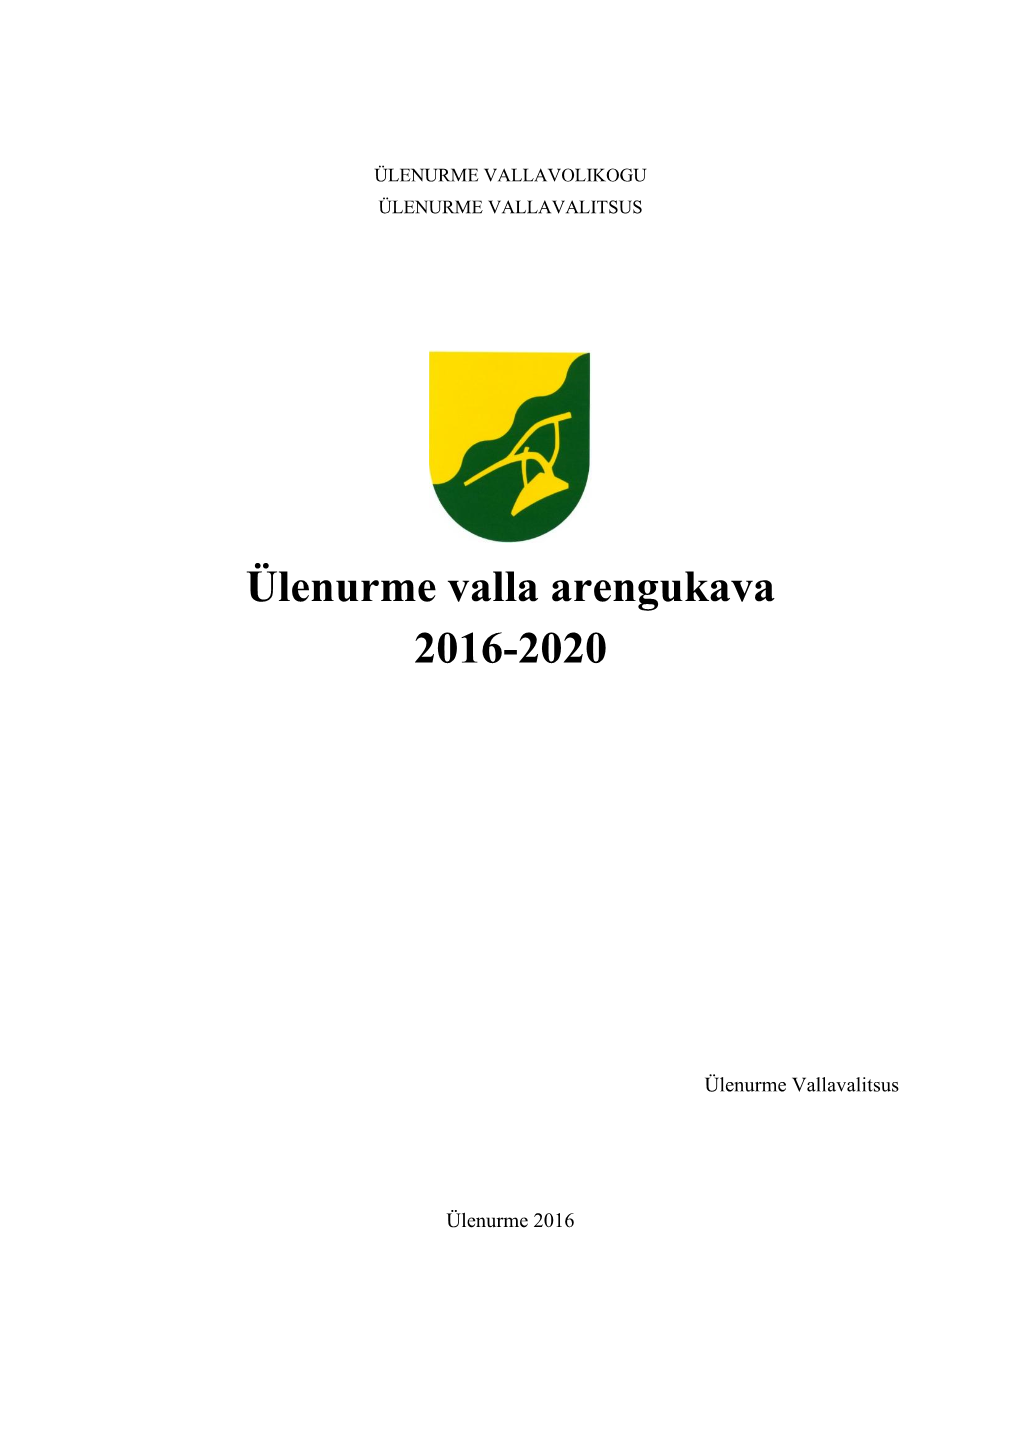 Ülenurme Valla Arengukava 2016-2020